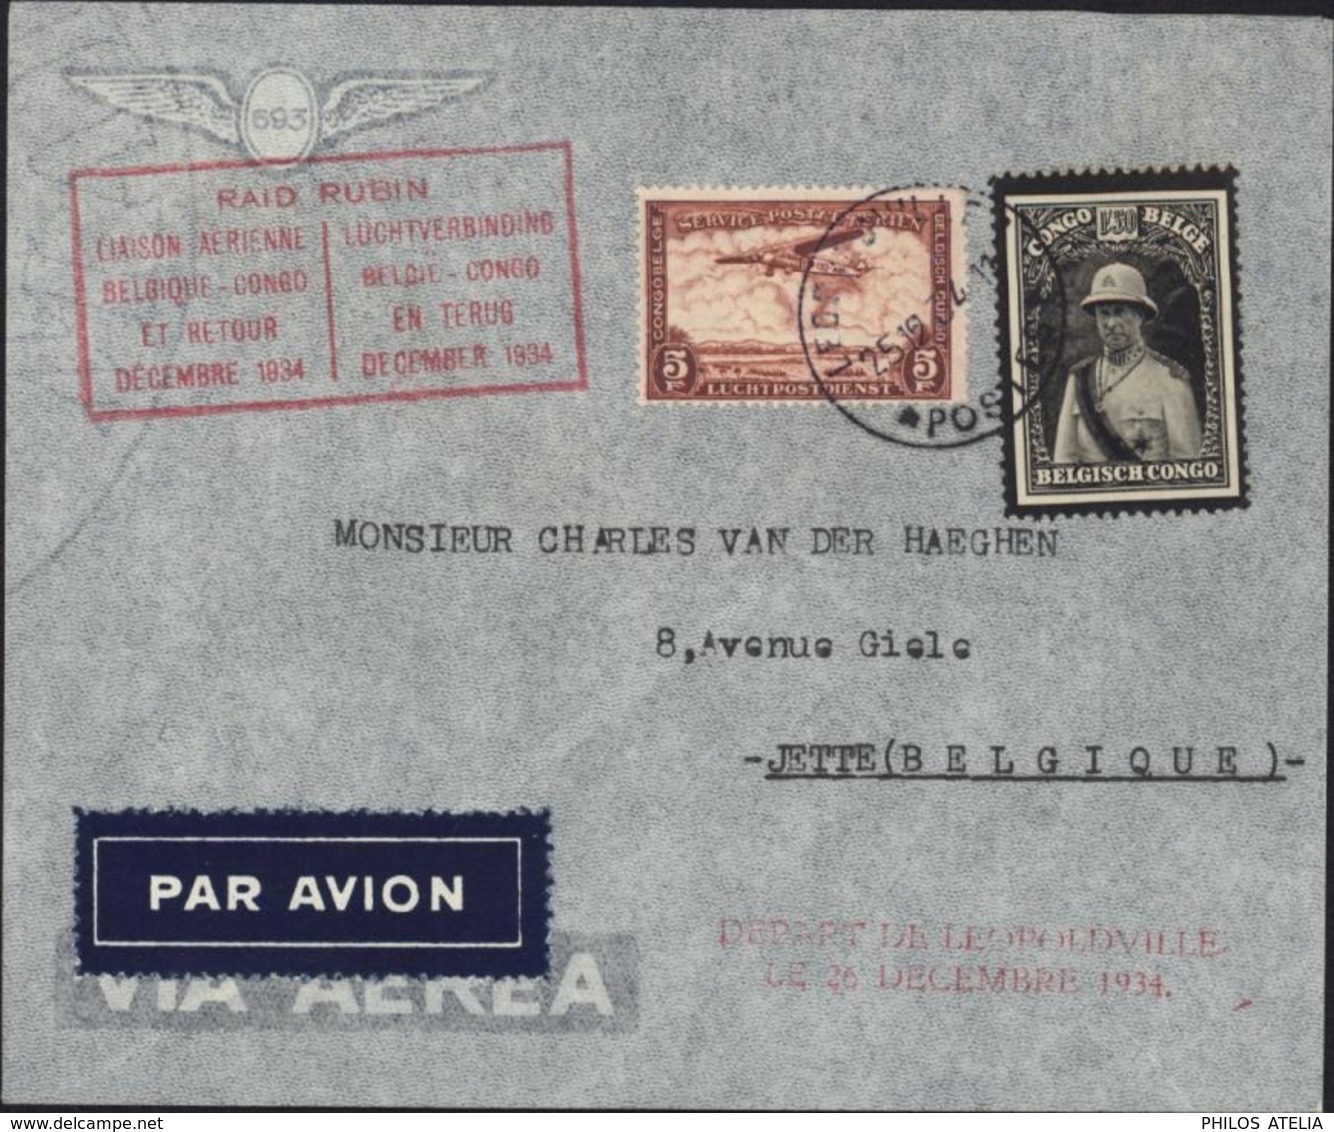 Congo Belge Poste Aérienne Raid Rubin Liaison Aérienne Belgique Congo Et Retour Décembre 1934 YT 184 + PA12 - Briefe U. Dokumente